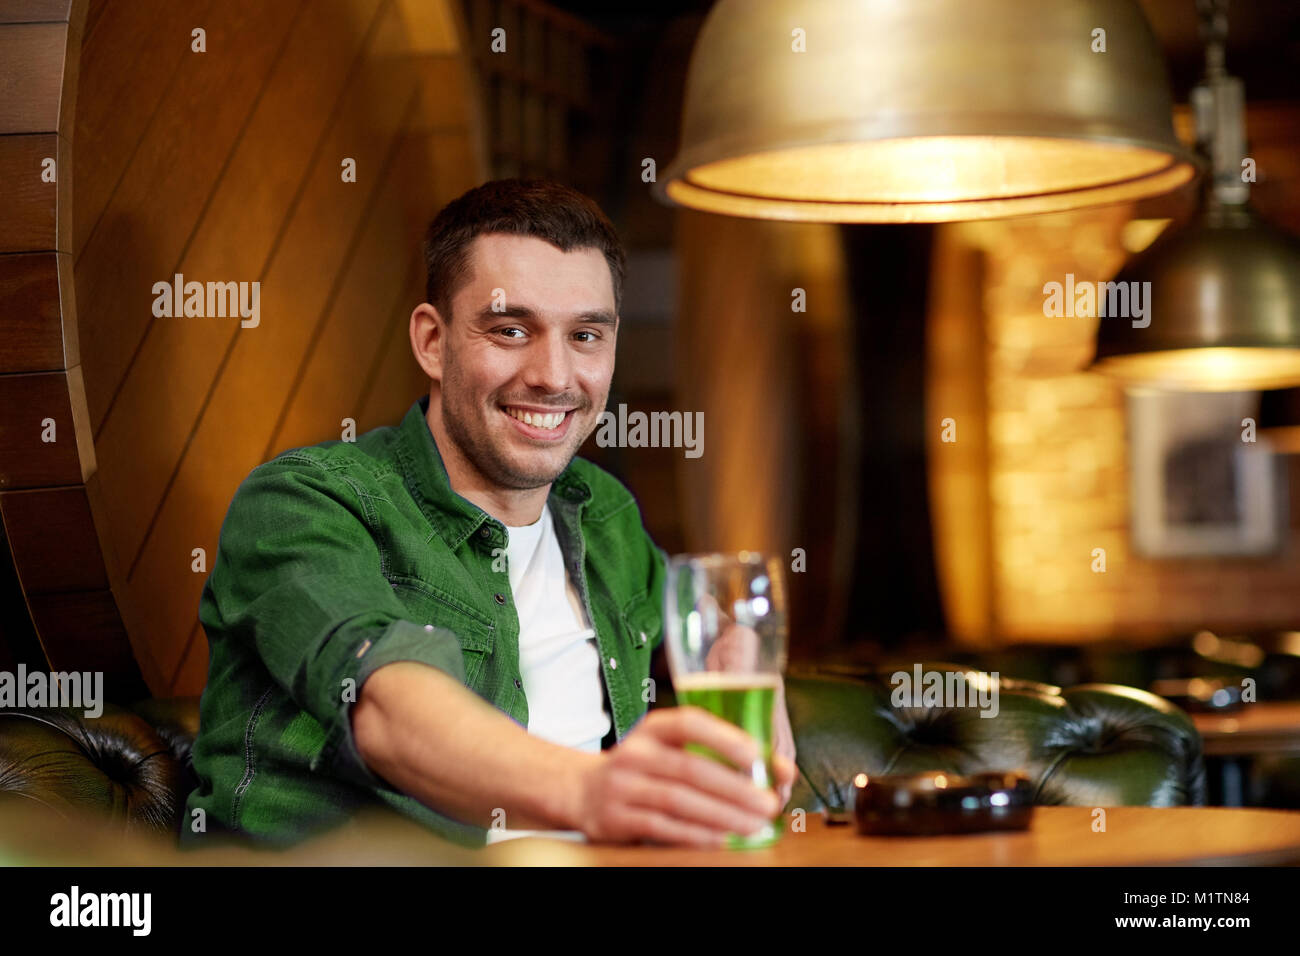 man drinking green beer at bar or pub Stock Photo